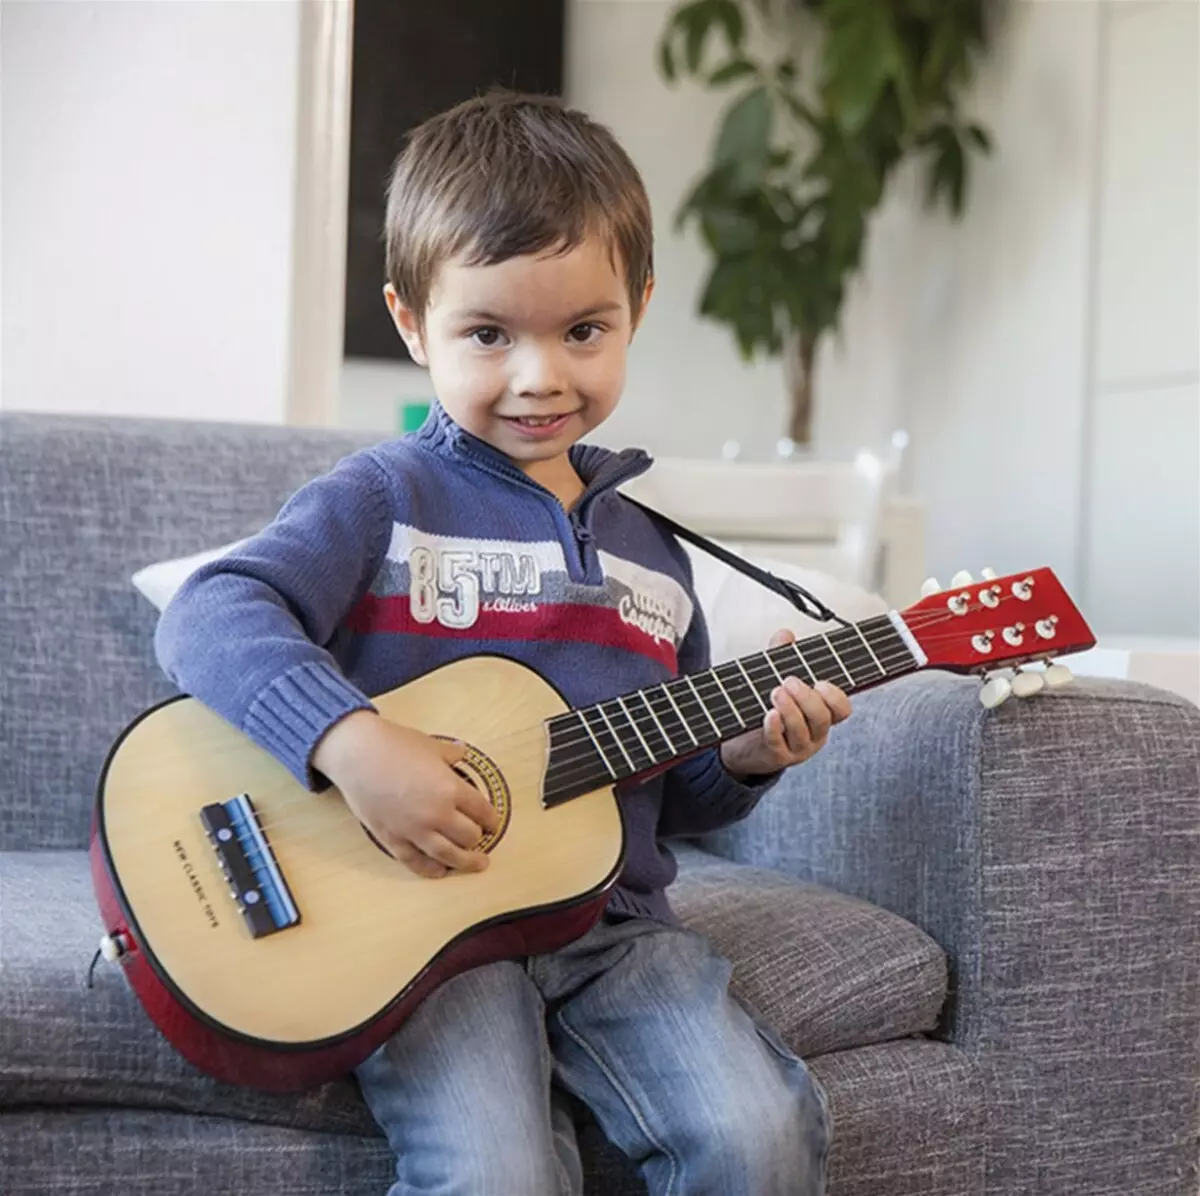 Гитара для начинающих детская. New Classic Toys гитара 10304. Детские гитары. Электрогитара для детей. Игрушечная электрогитара.